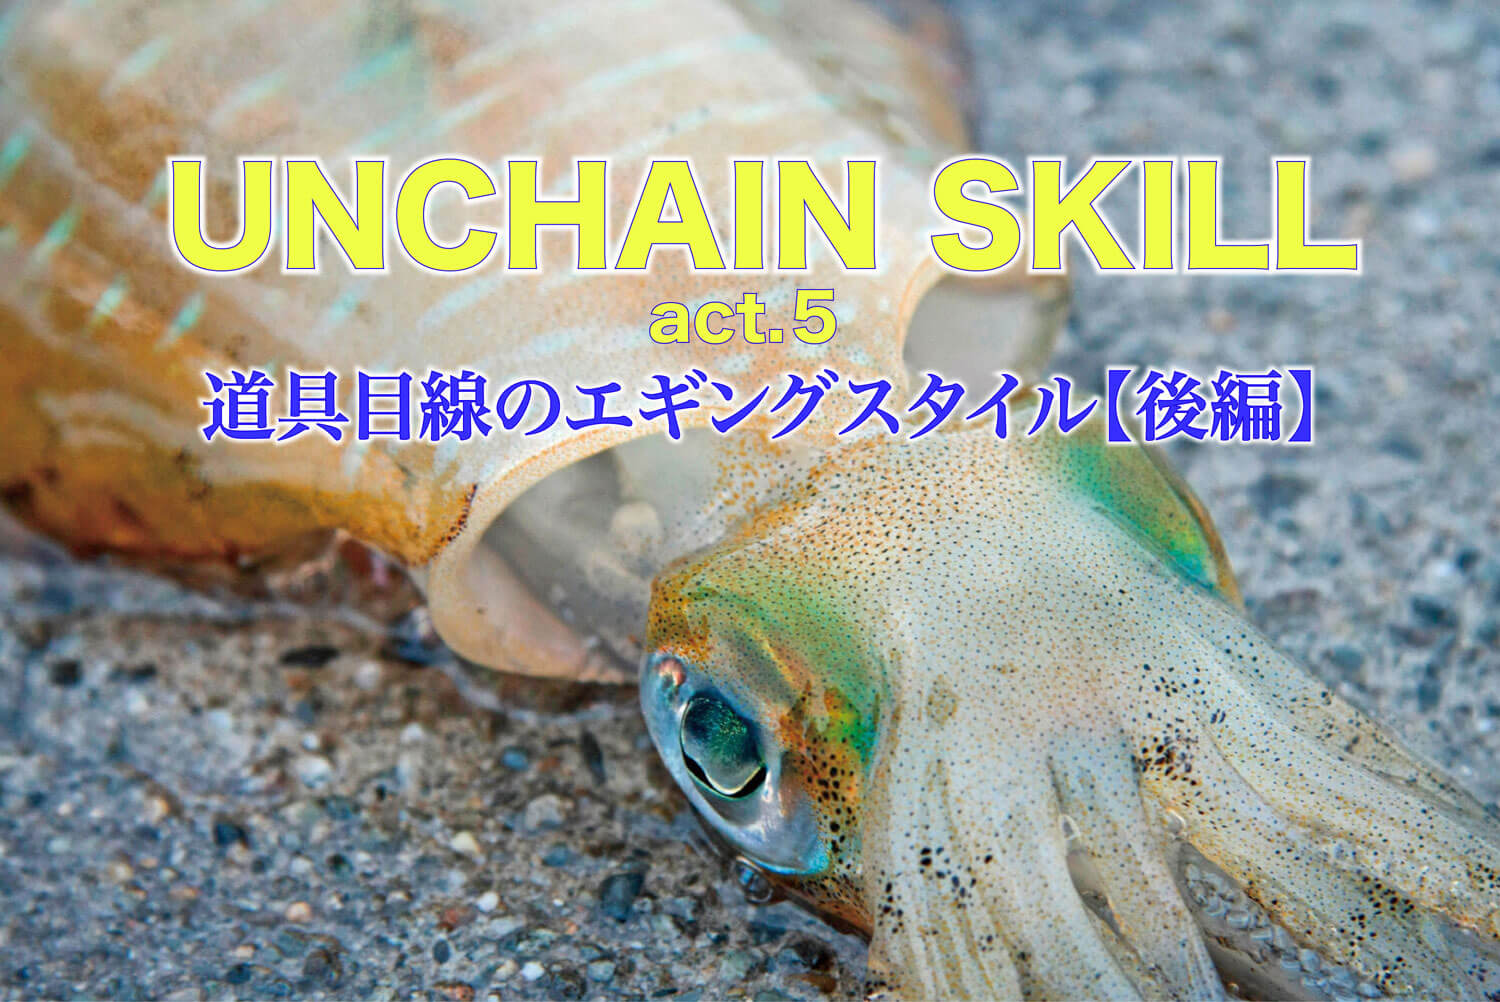 Unchain Skill Act 5 道具目線のエギングスタイル 後編 Sw 釣り人のためのメディア